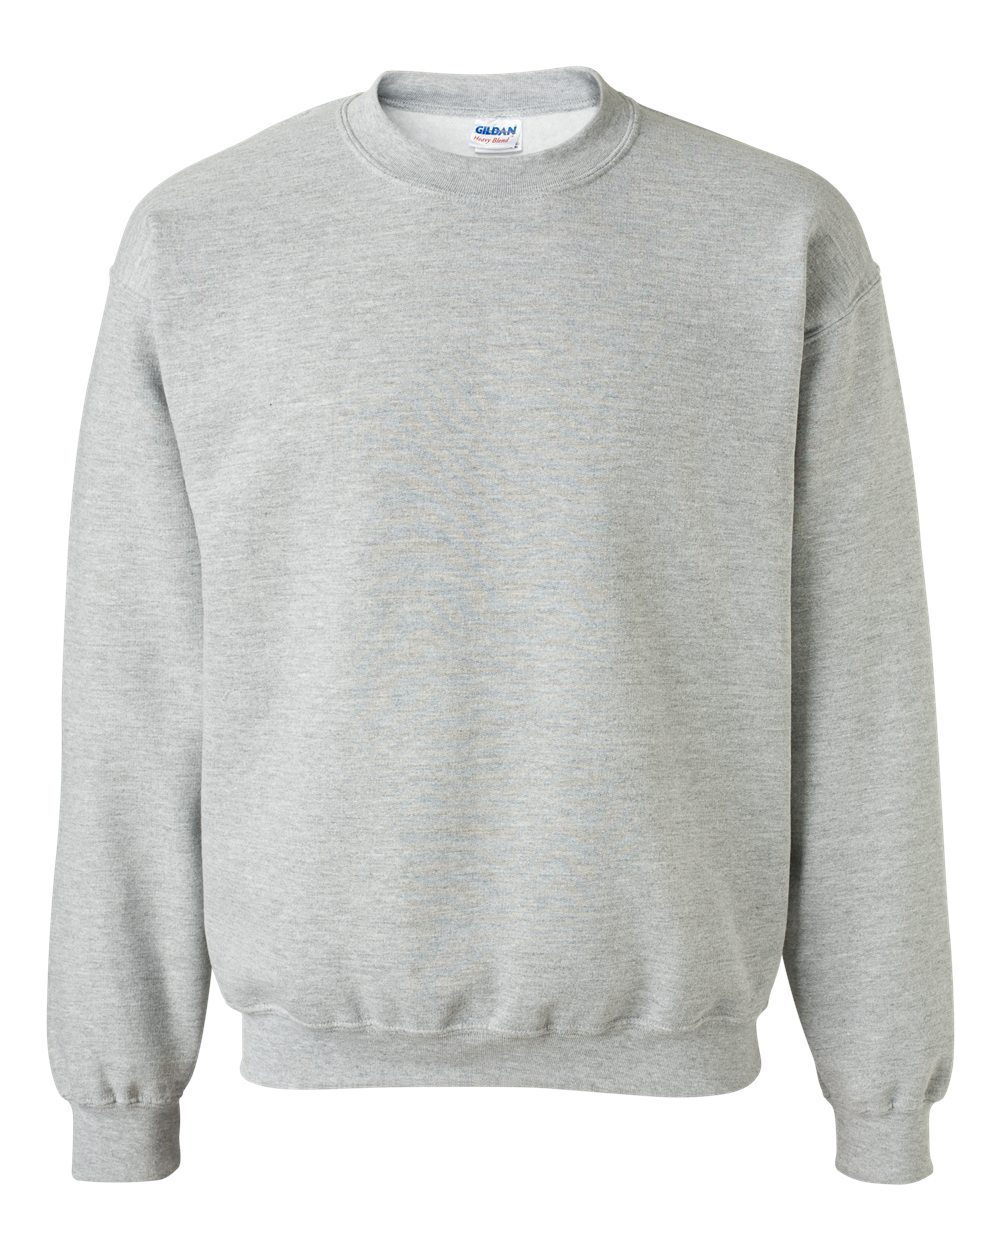 blank light grey gildan sweatshirt - Basic tees shop